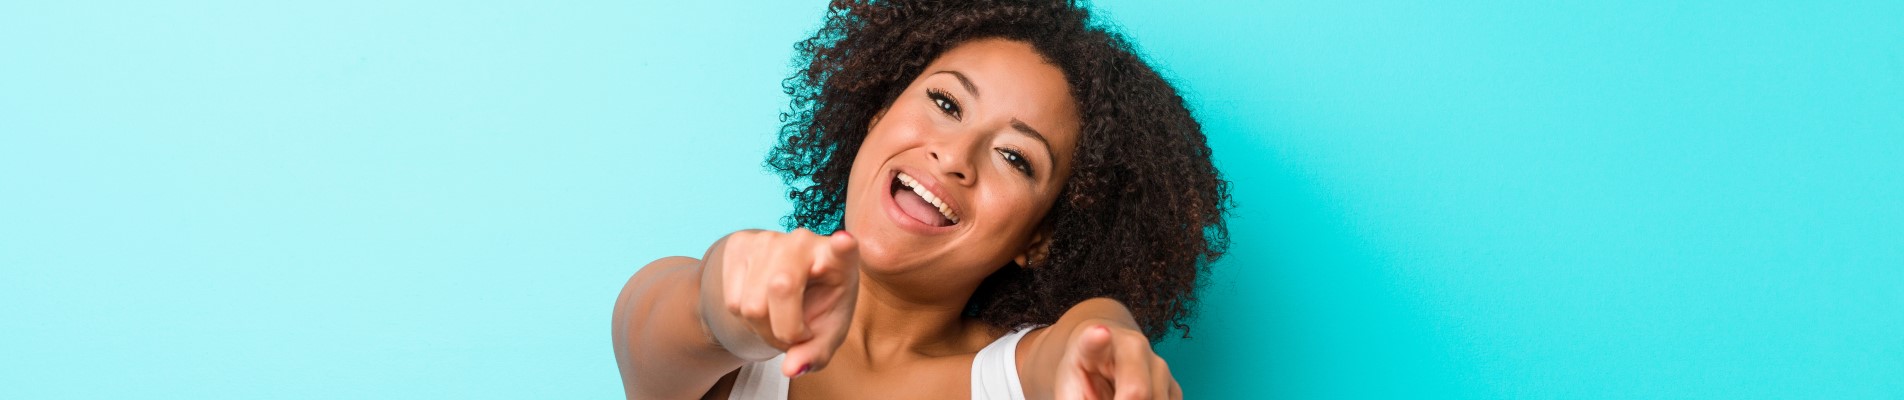 8 dicas para economizar energia no verão e gastar menos | Foto de uma mulher sorridente apontando para frente, em um fundo azul | Economia e renda extra | Eu Dou Conta